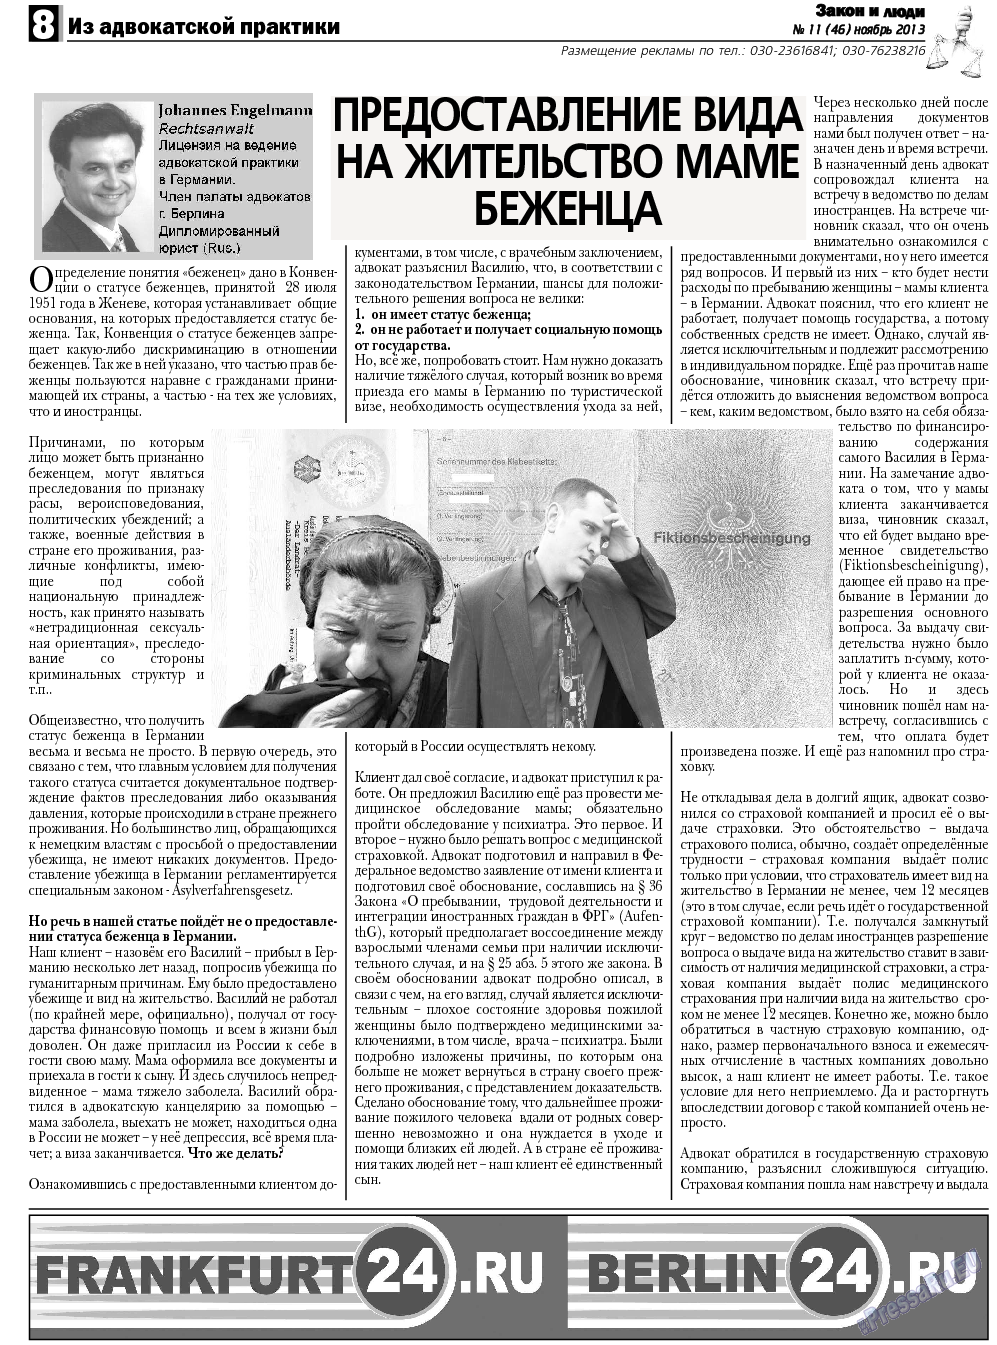 Закон и люди, газета. 2013 №11 стр.8